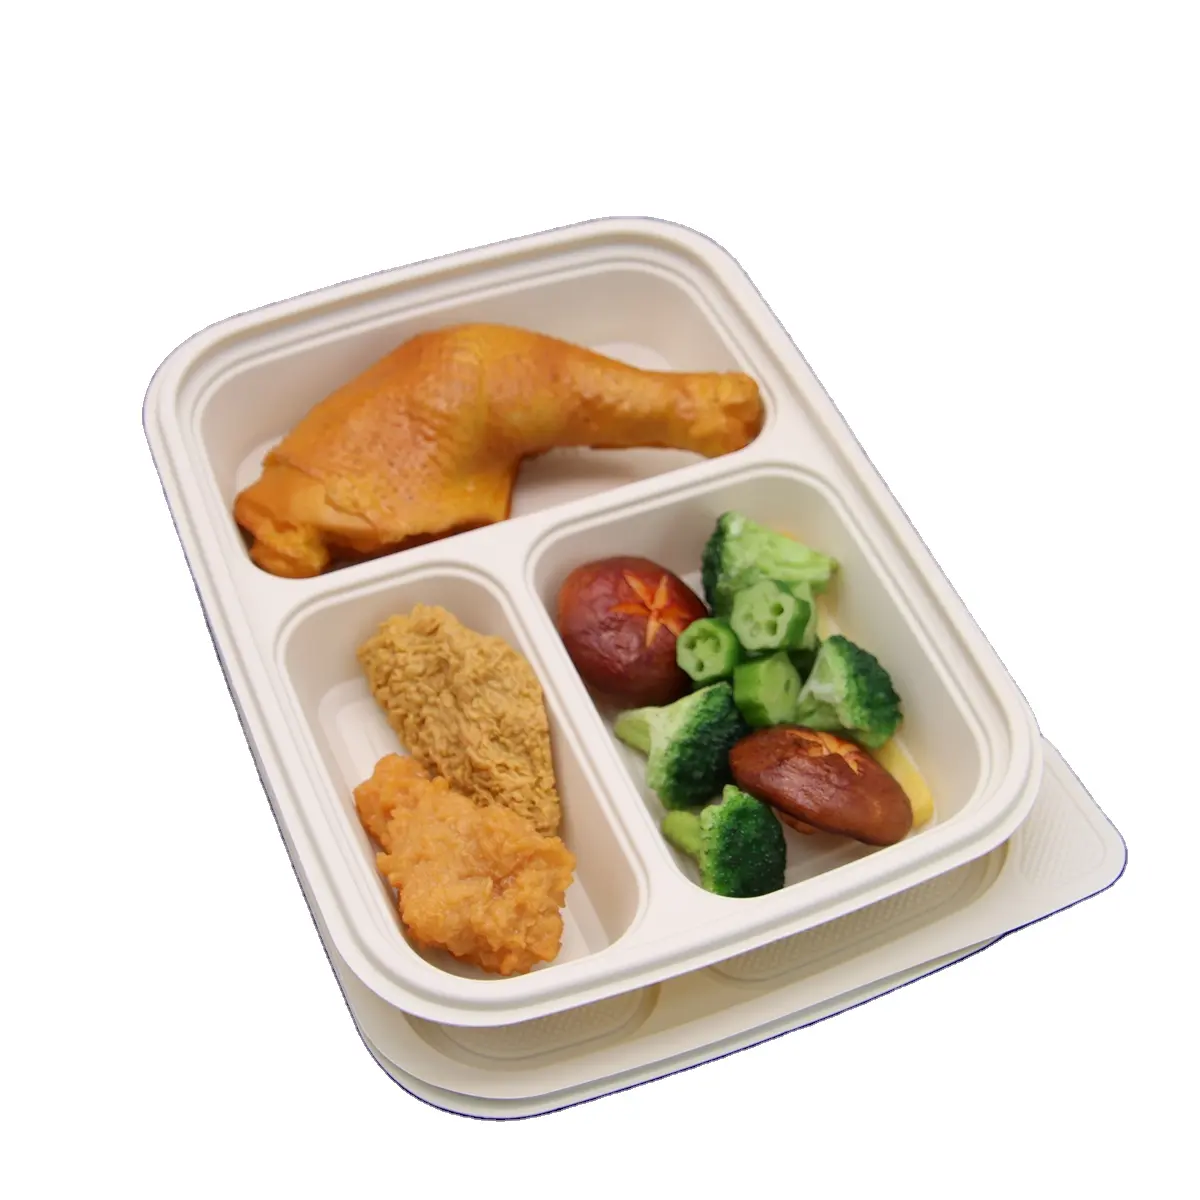 Contenitore per alimenti a rapida preparazione biodegradabile a 3 scomparti per il pranzo all'fedi di mais